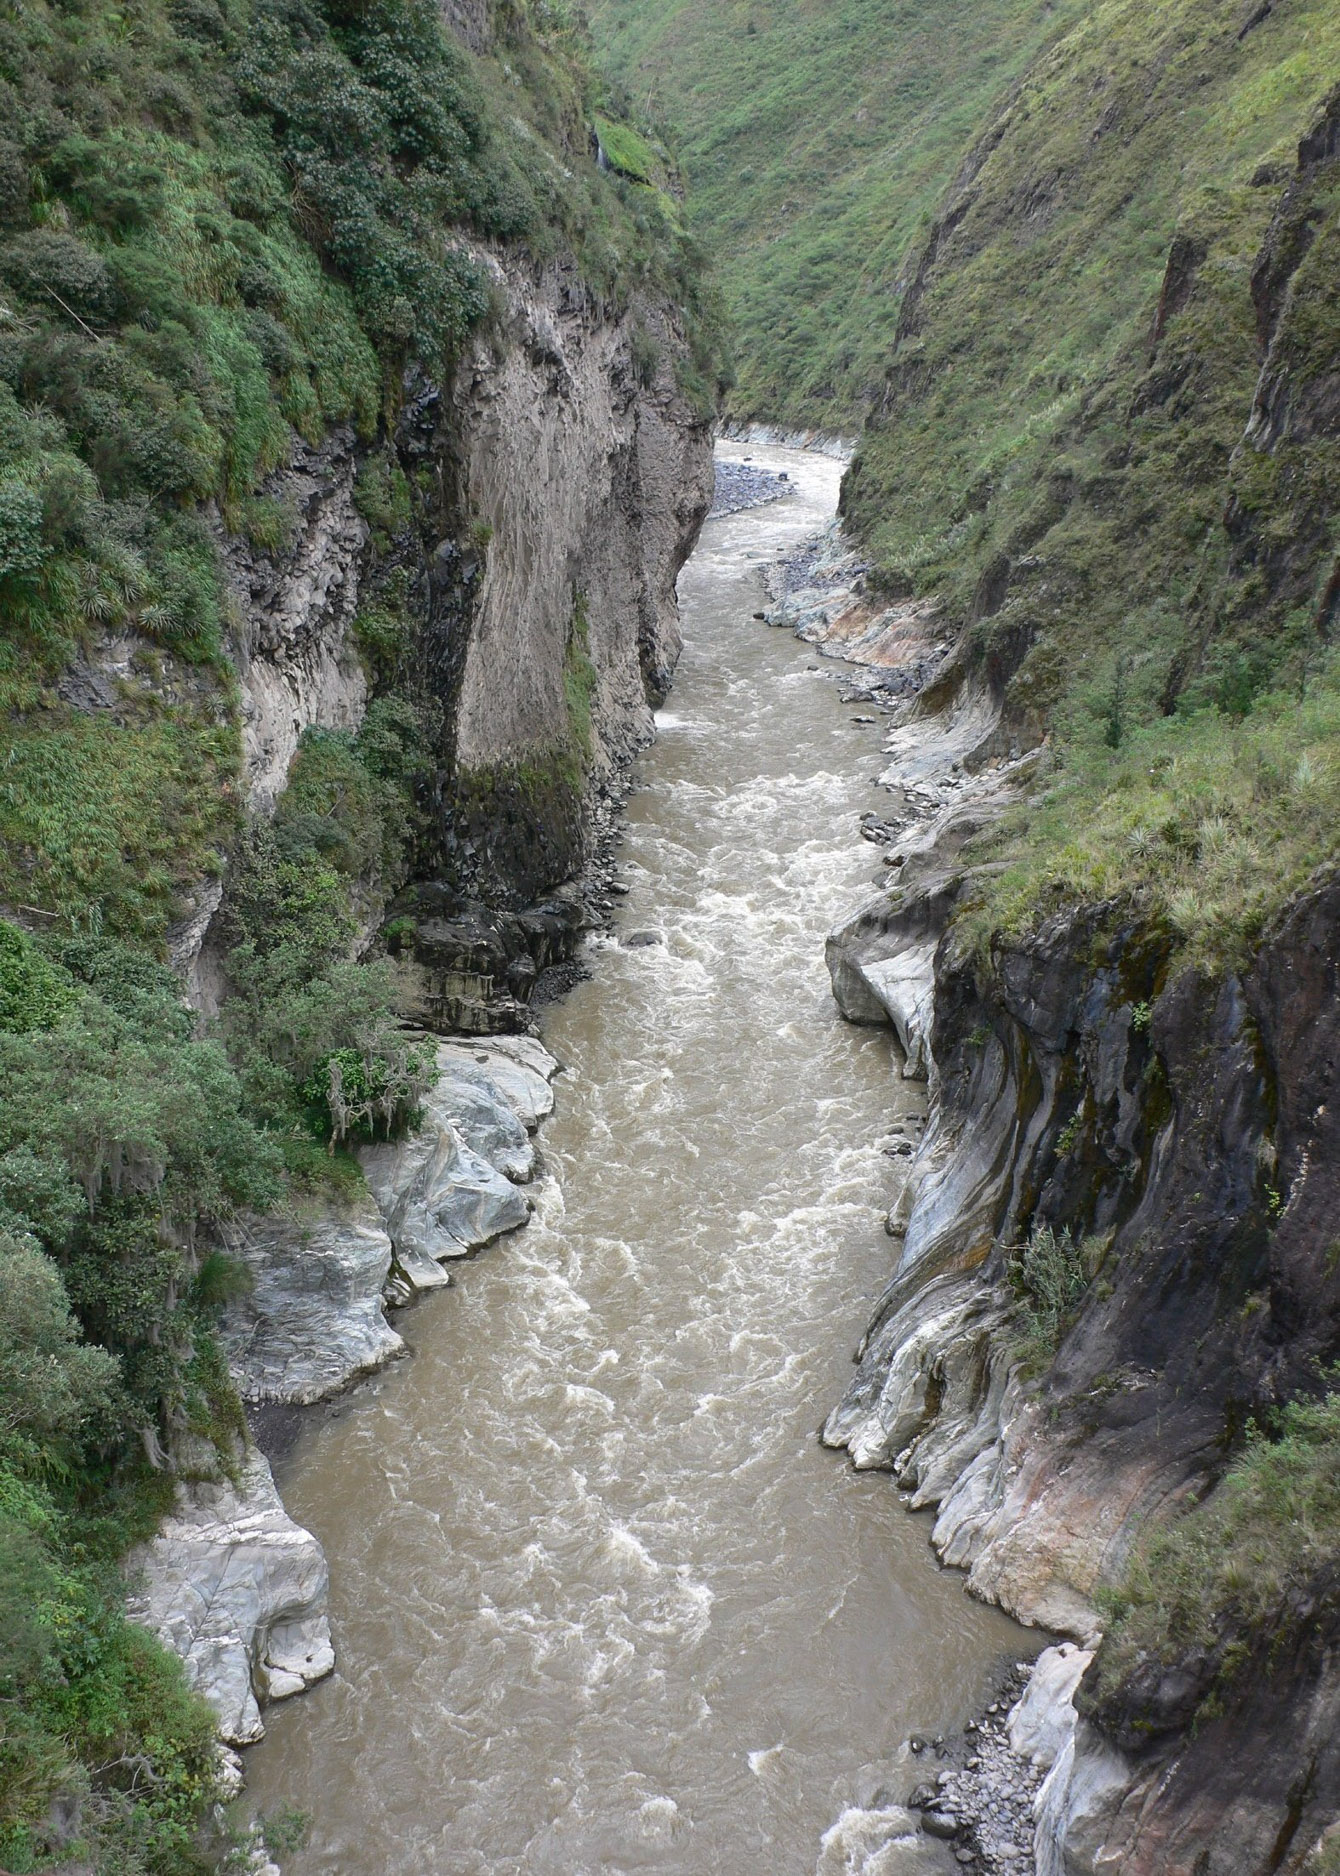 River Pastaza gorge at Banos